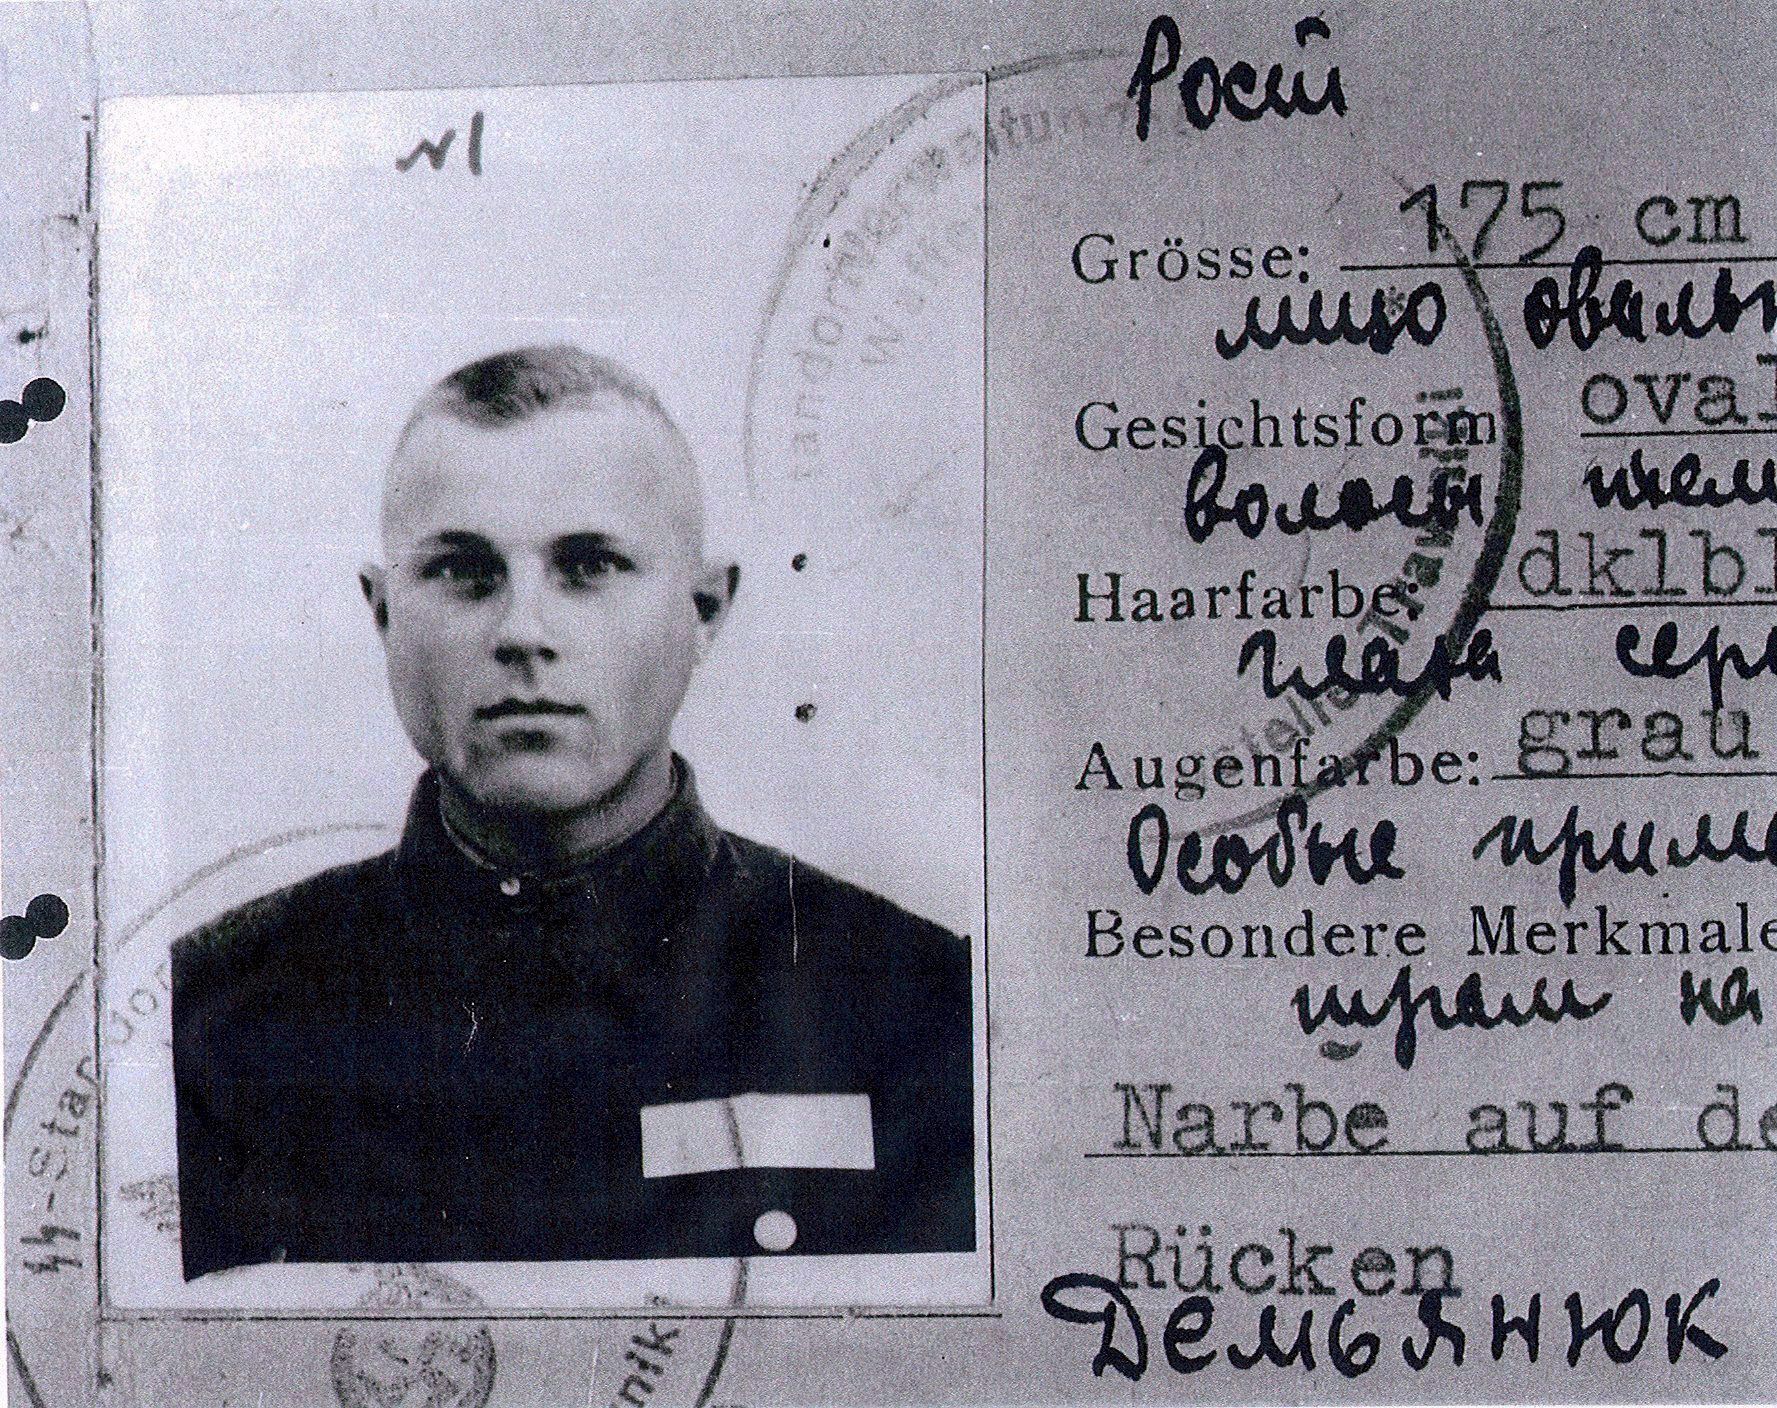 La carta d'identità di Ivan Demjanjuk